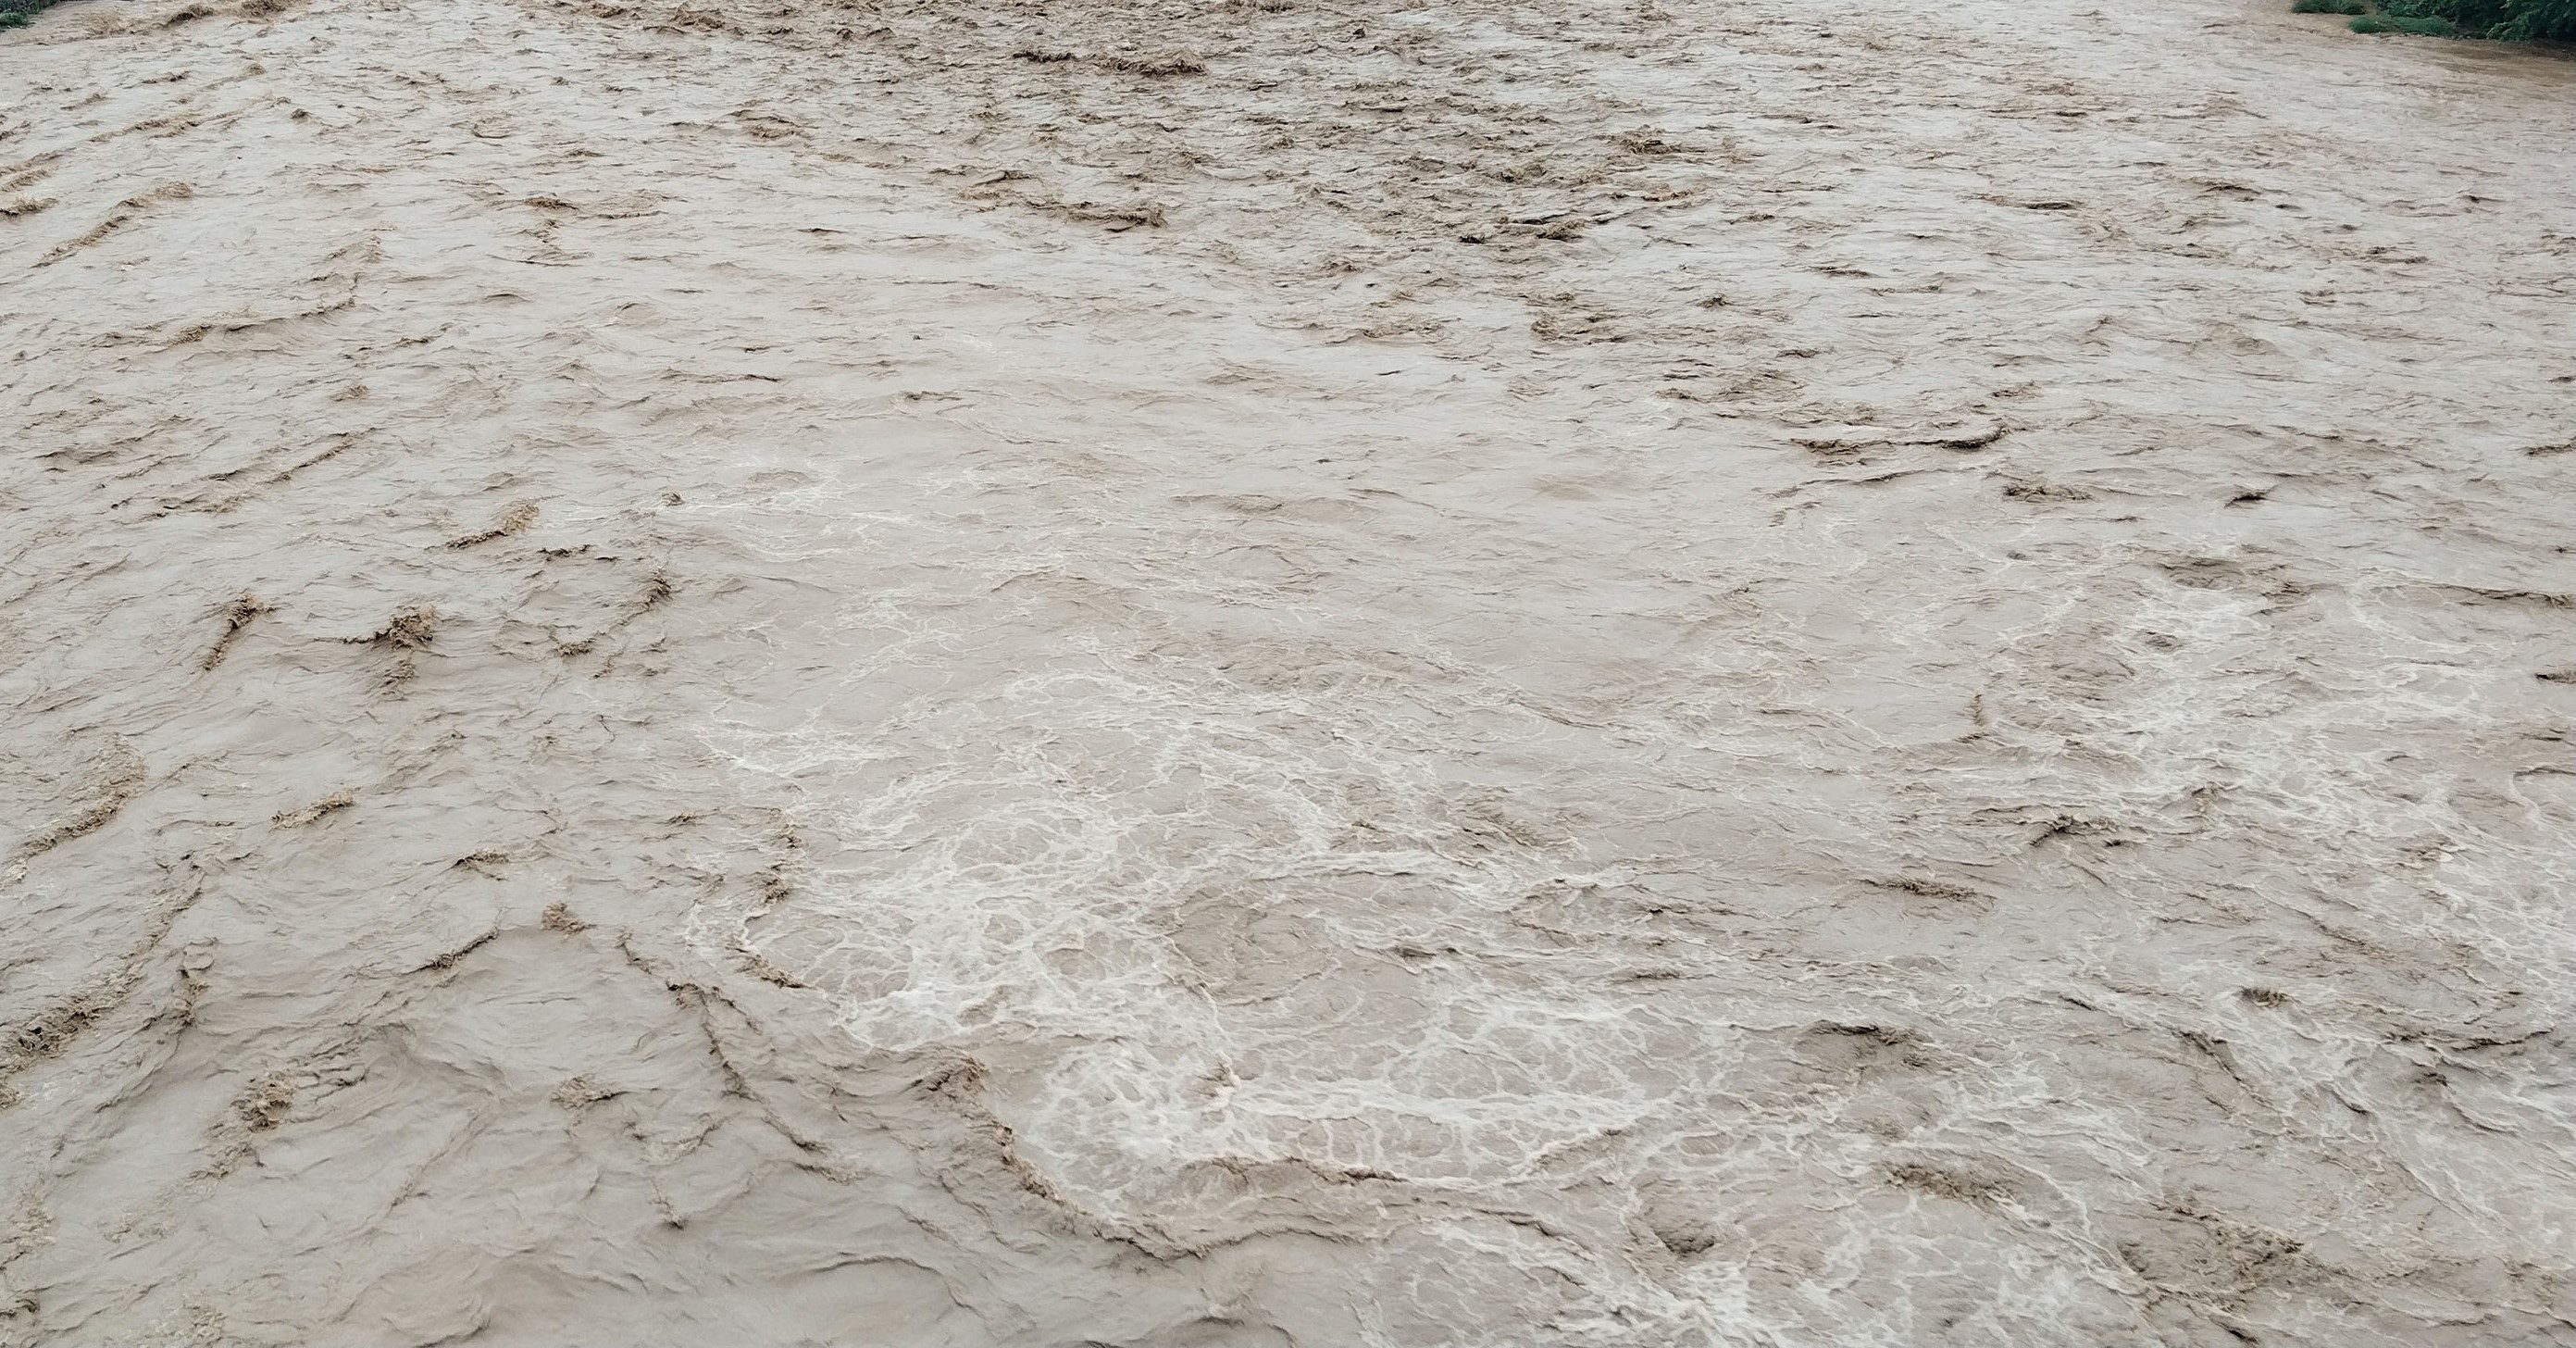 सेती नदीमा बाढीः ६० परिवारलाई सुरक्षित स्थानमा सारियो